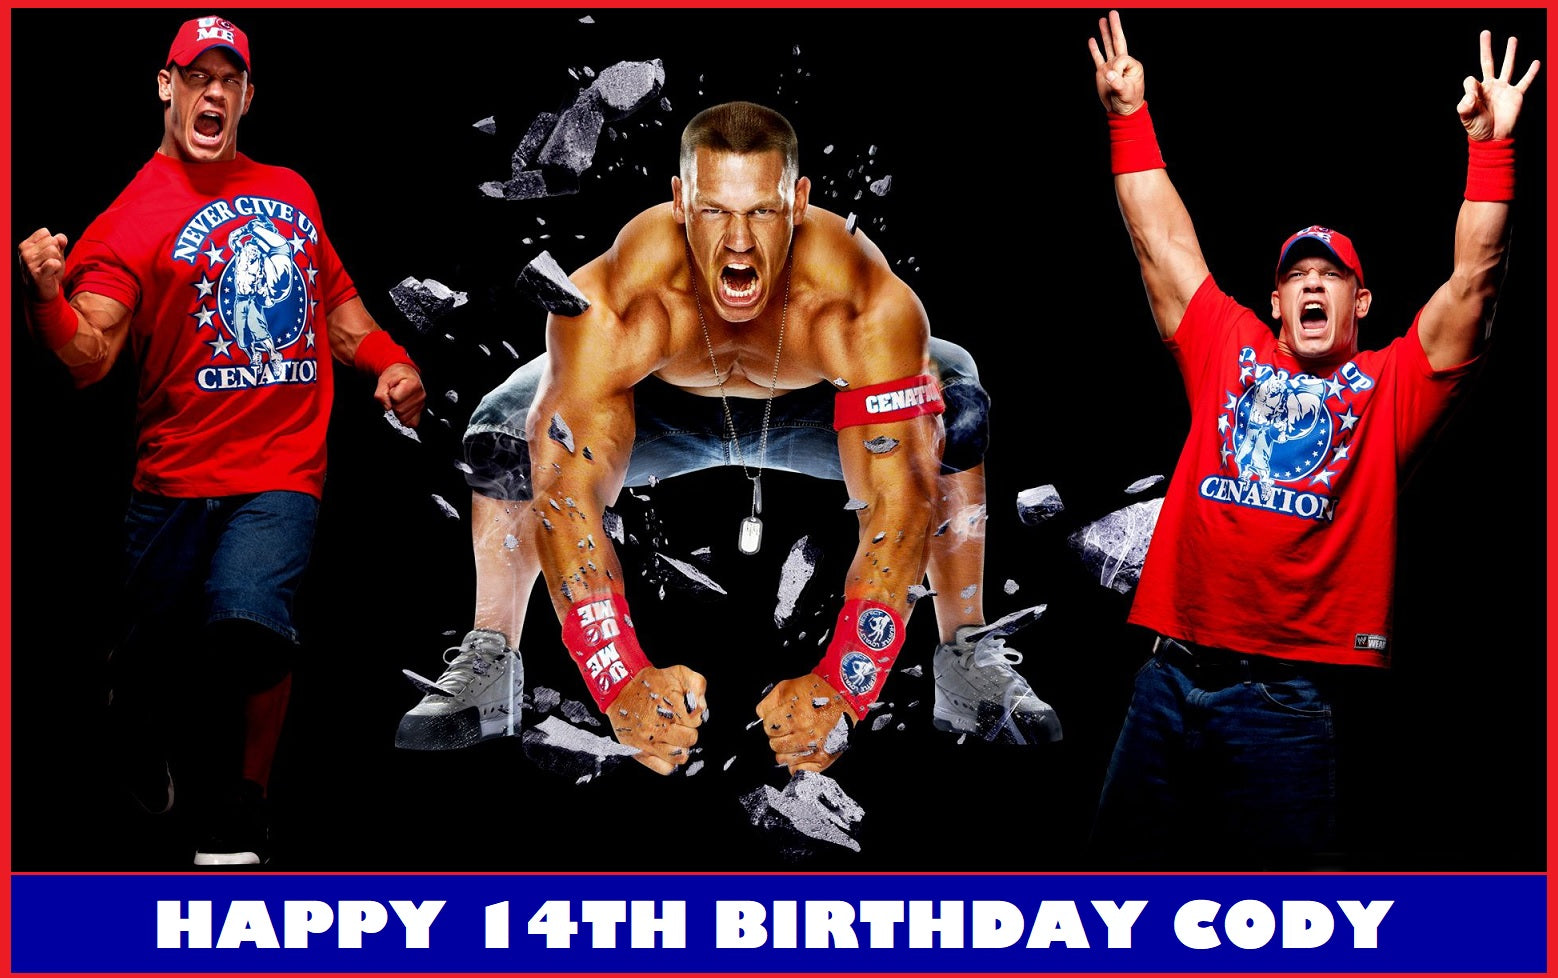 Happy birthday, John Cena